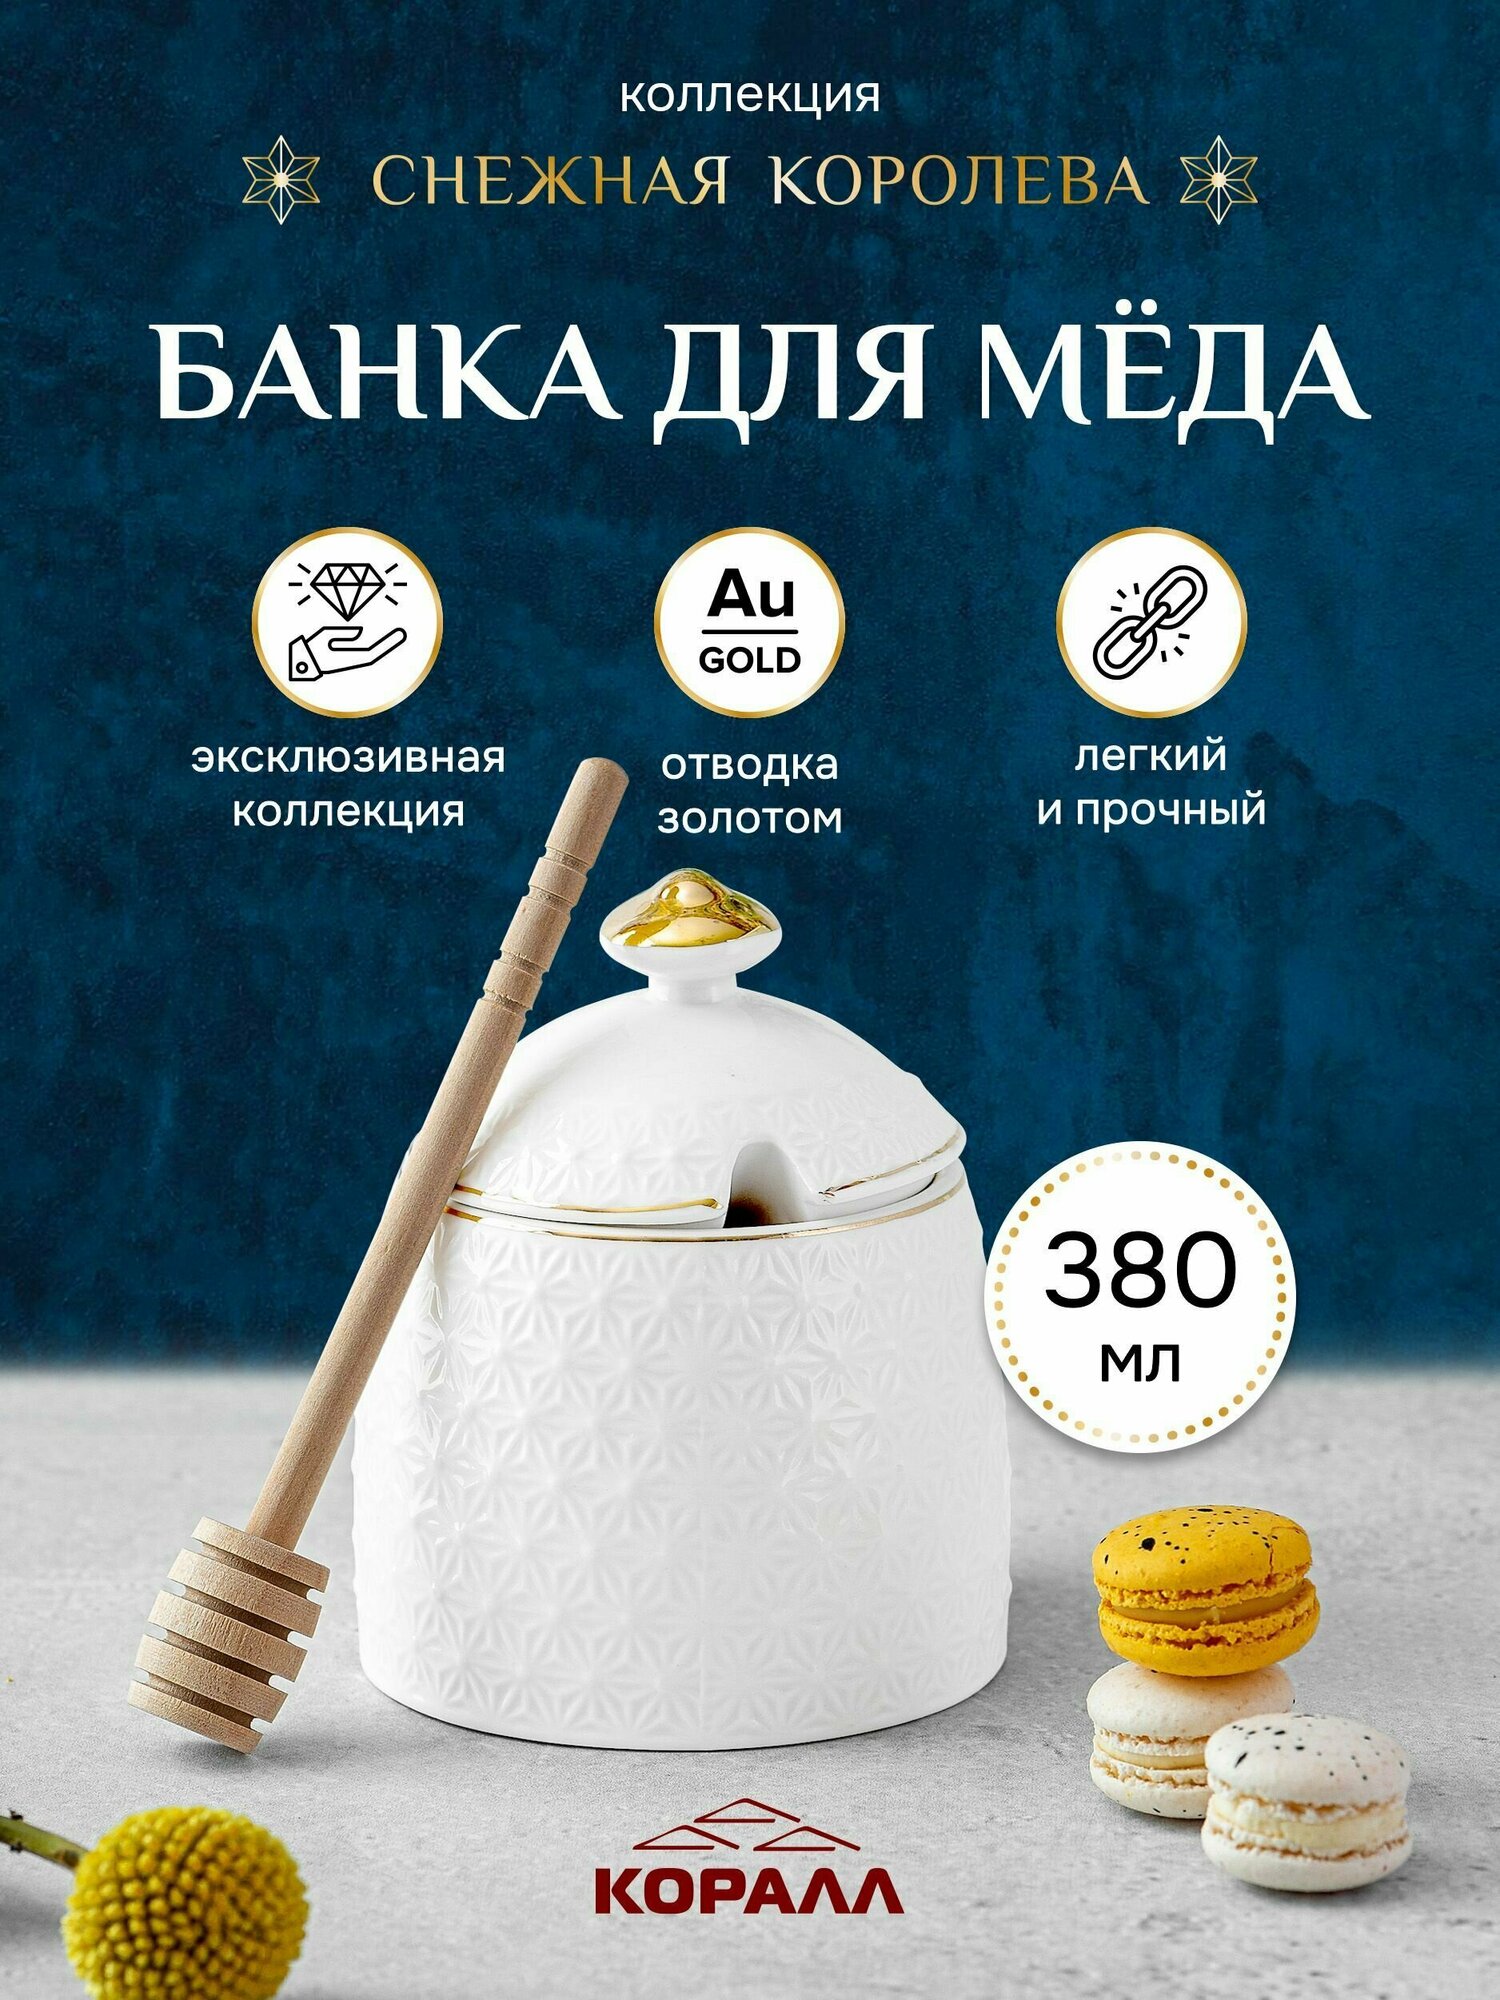 Банка для меда белая керамическая Снежная королева 380мл Коралл